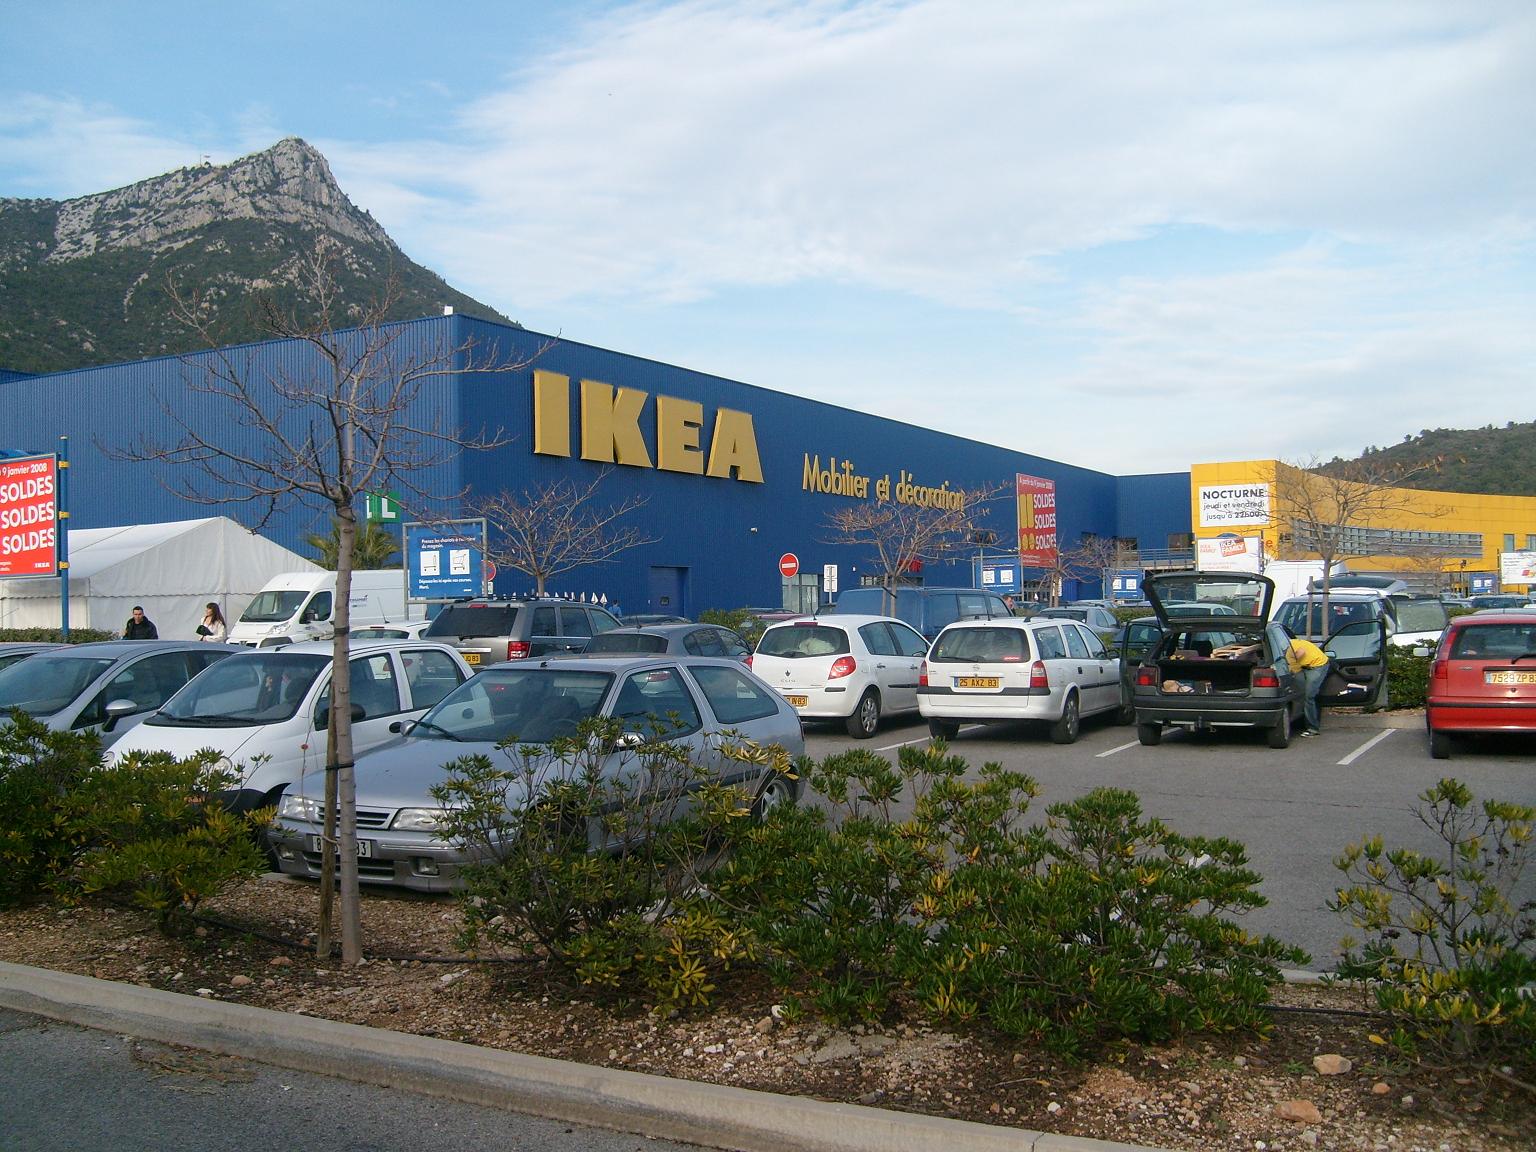 Ikea in La Valette